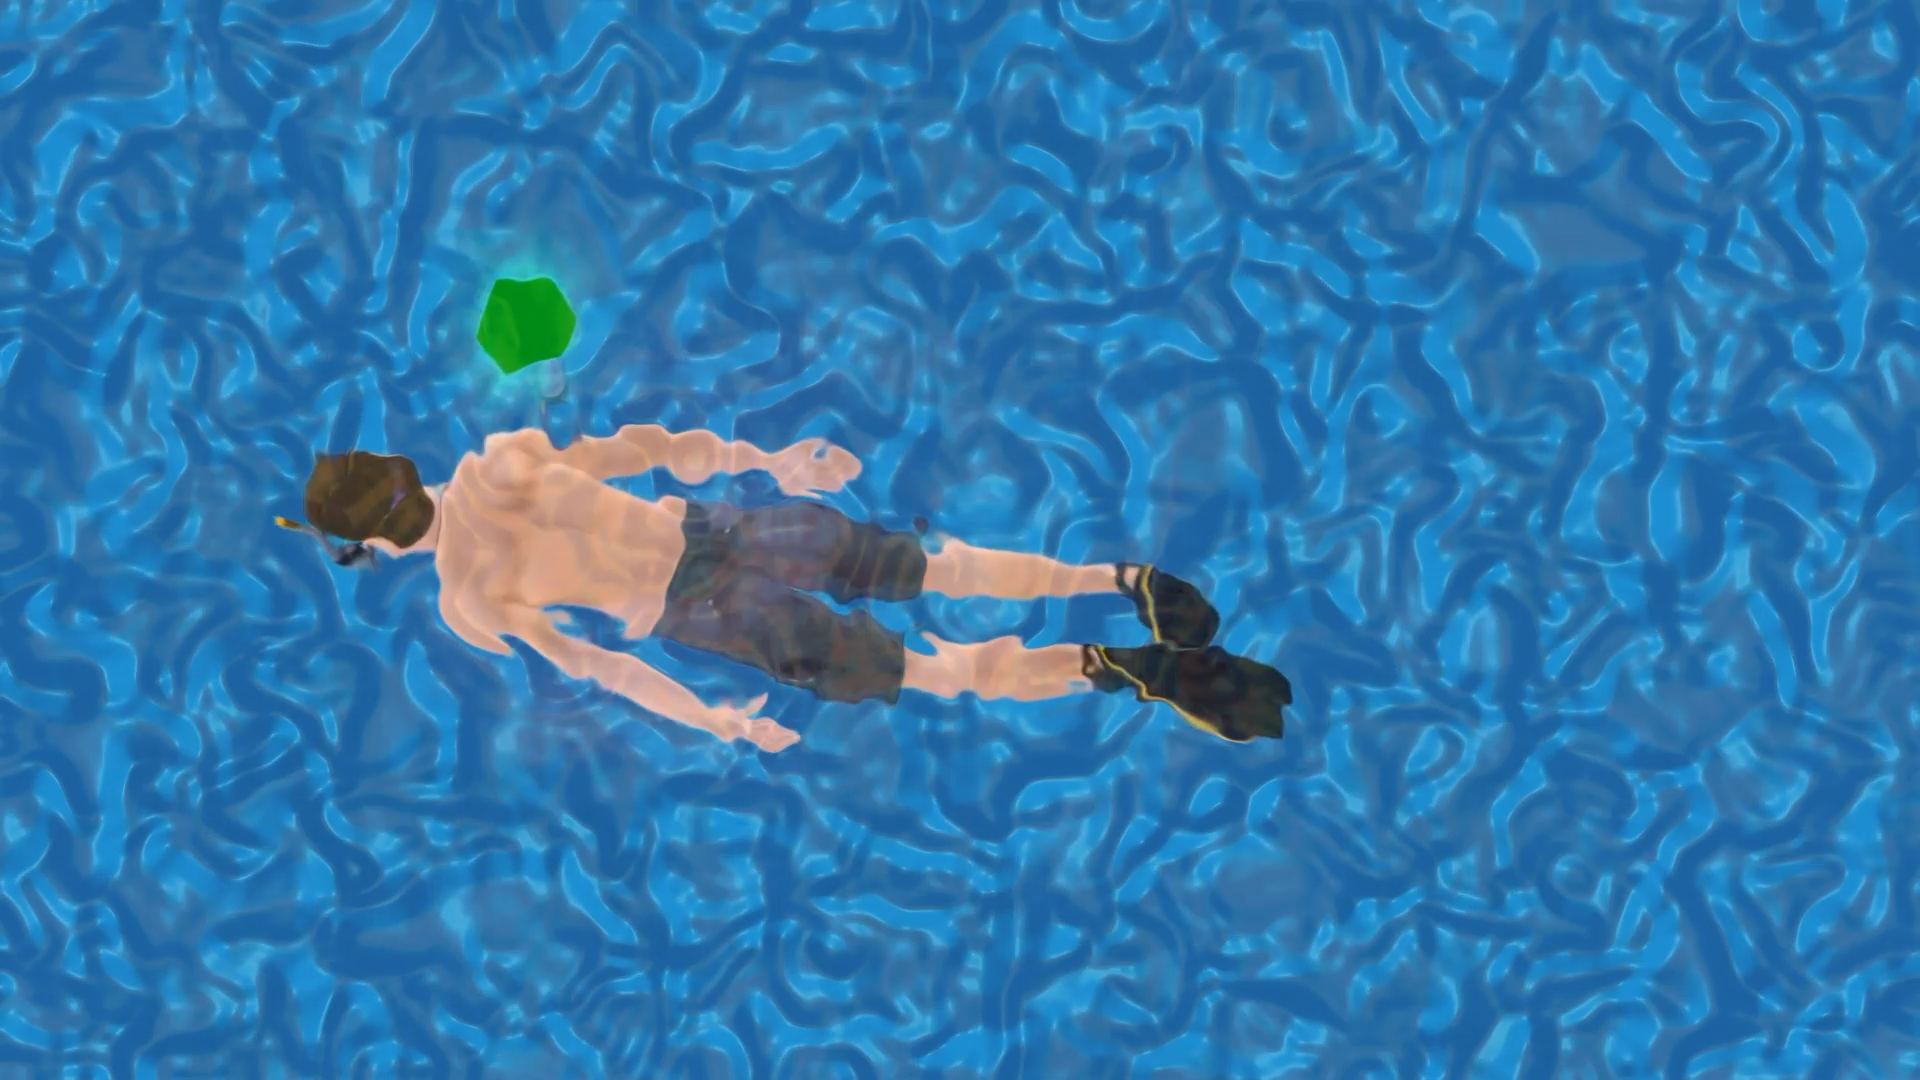 Lukas Graf Swimming, Drowning